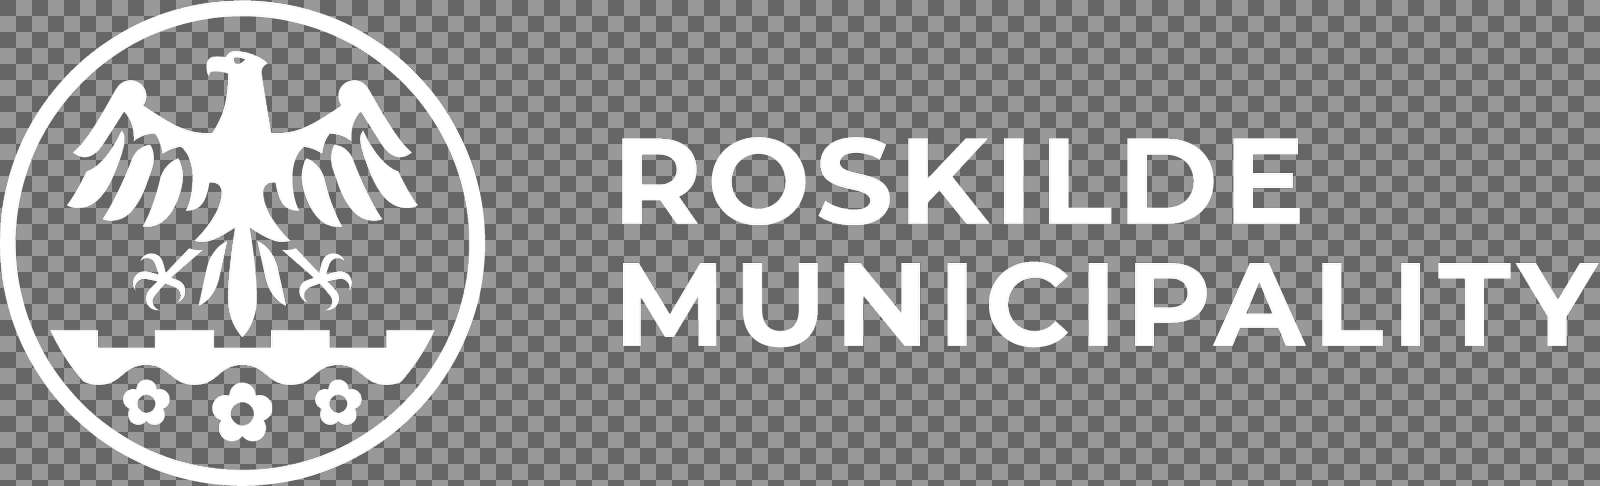 Roskilde Municipality neg